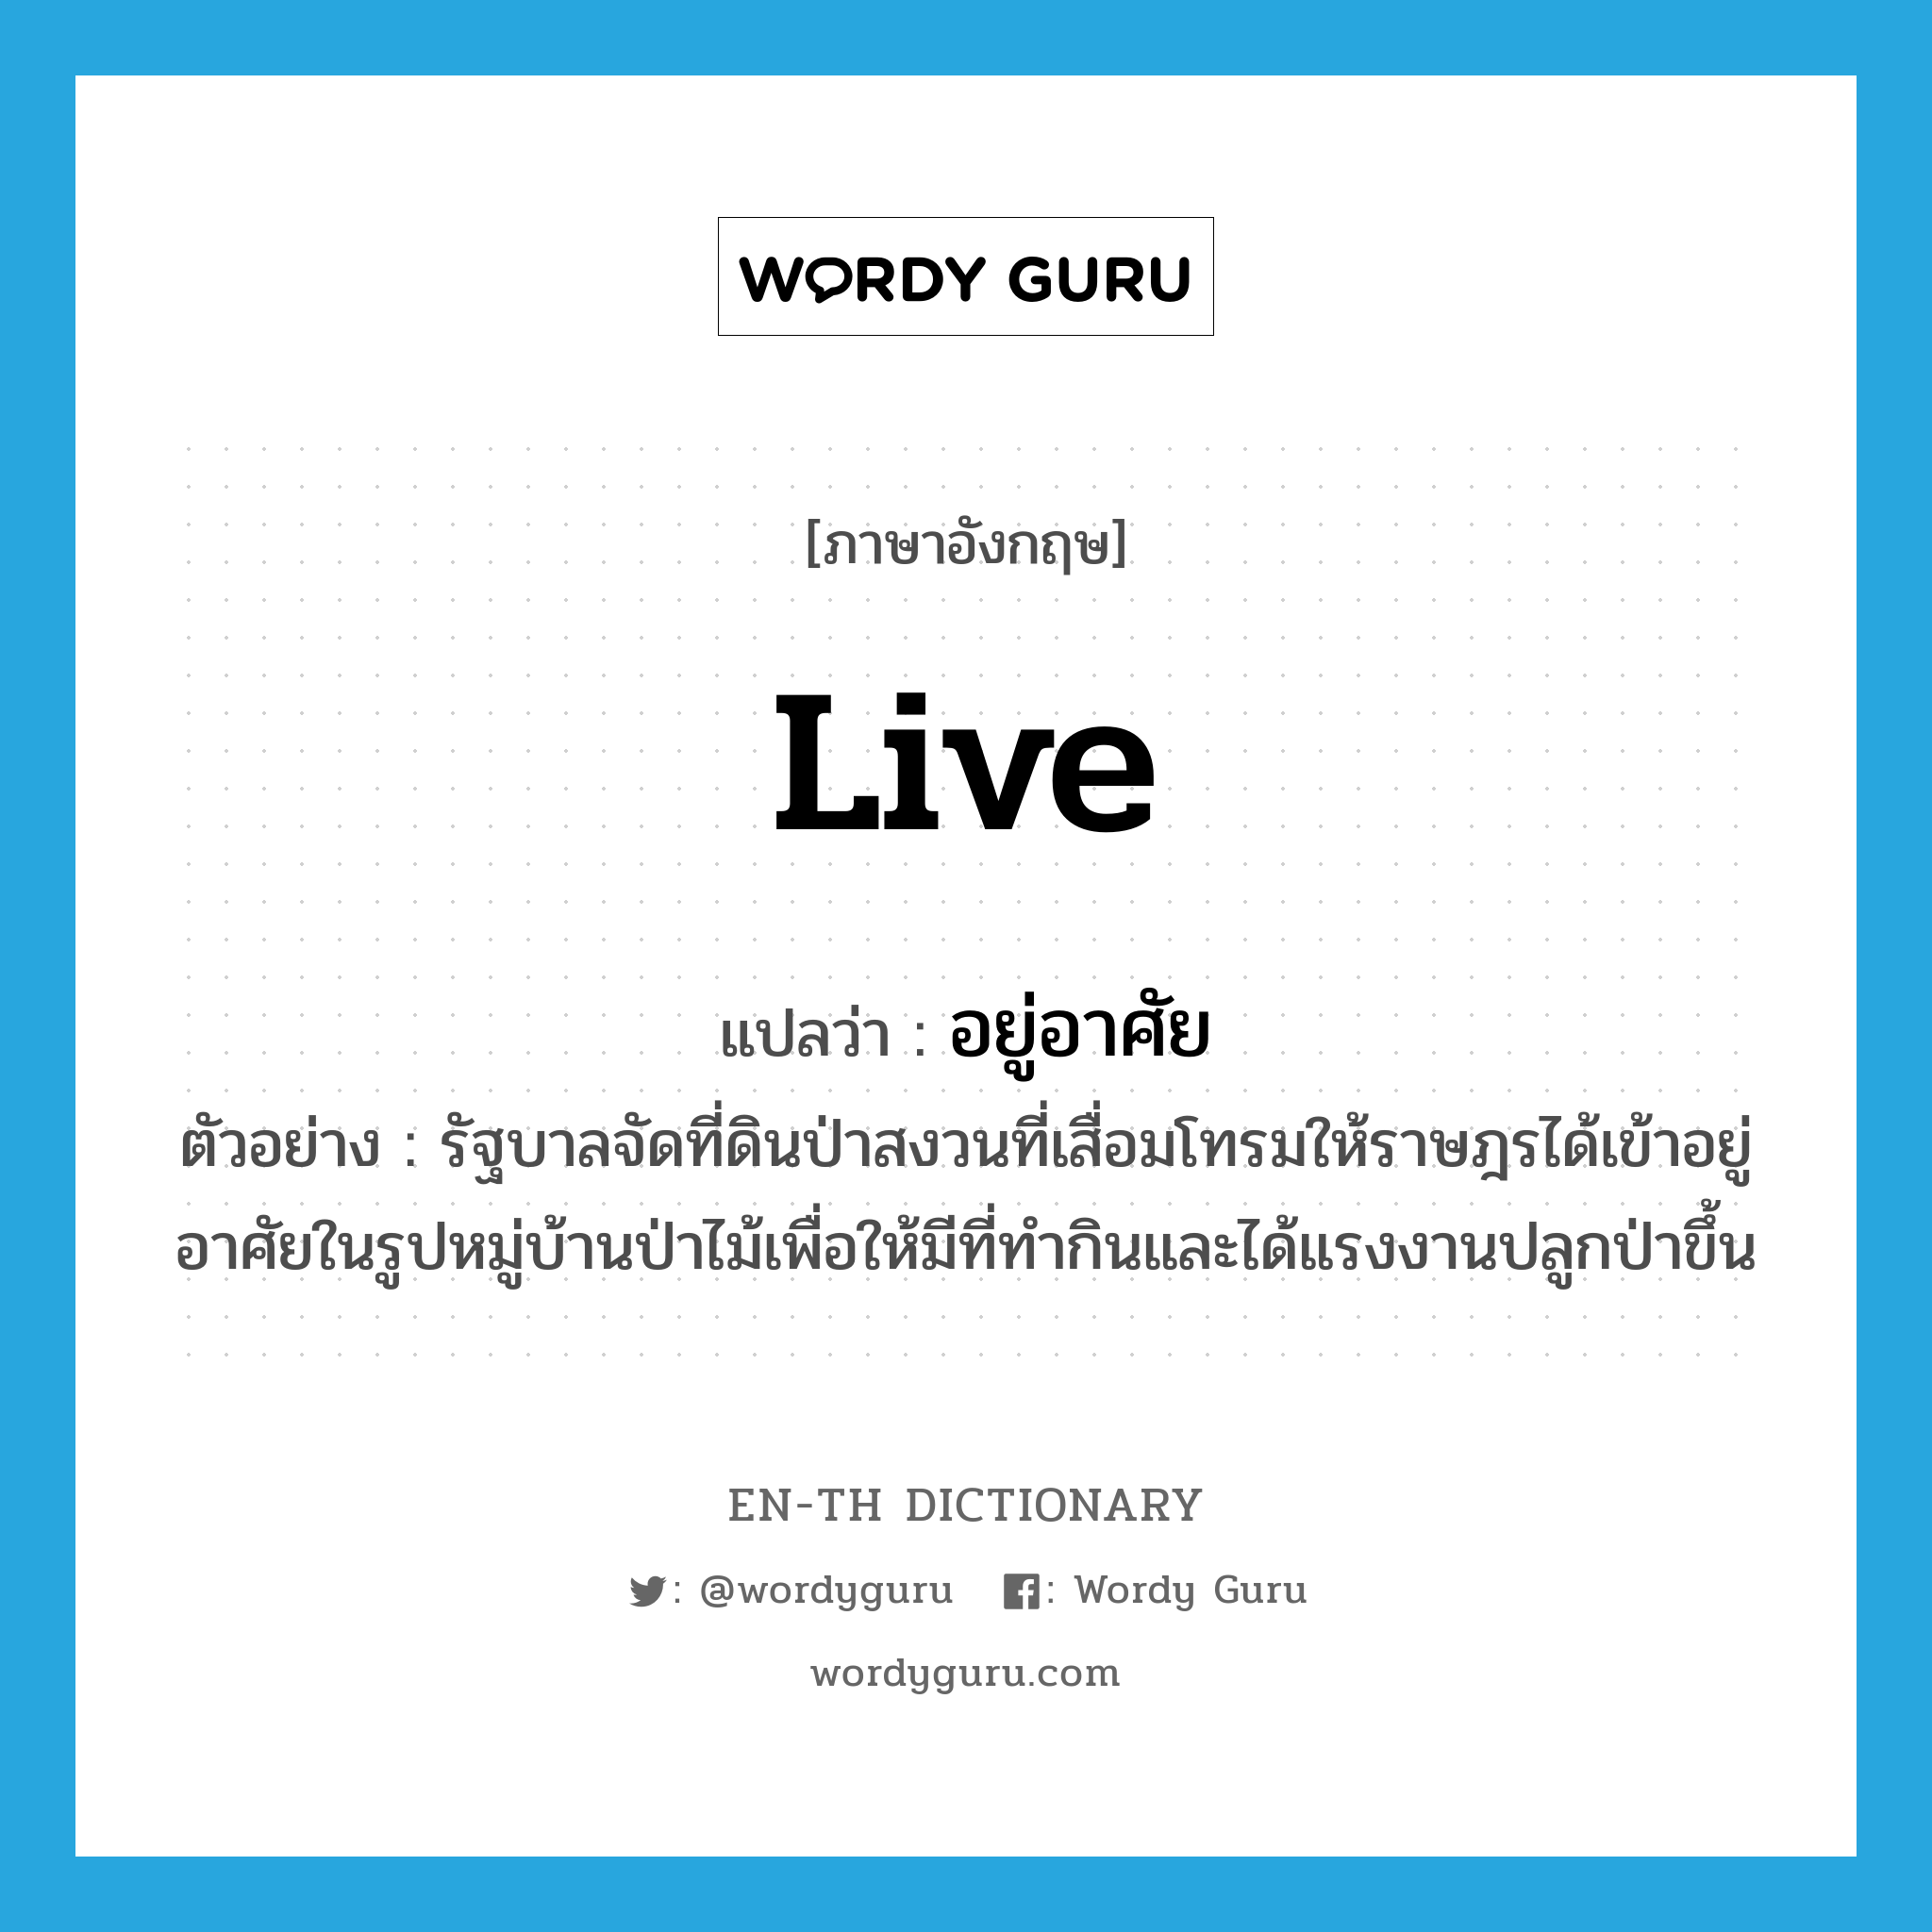 live แปลว่า?, คำศัพท์ภาษาอังกฤษ live แปลว่า อยู่อาศัย ประเภท V ตัวอย่าง รัฐบาลจัดที่ดินป่าสงวนที่เสื่อมโทรมให้ราษฎรได้เข้าอยู่อาศัยในรูปหมู่บ้านป่าไม้เพื่อให้มีที่ทำกินและได้แรงงานปลูกป่าขึ้น หมวด V